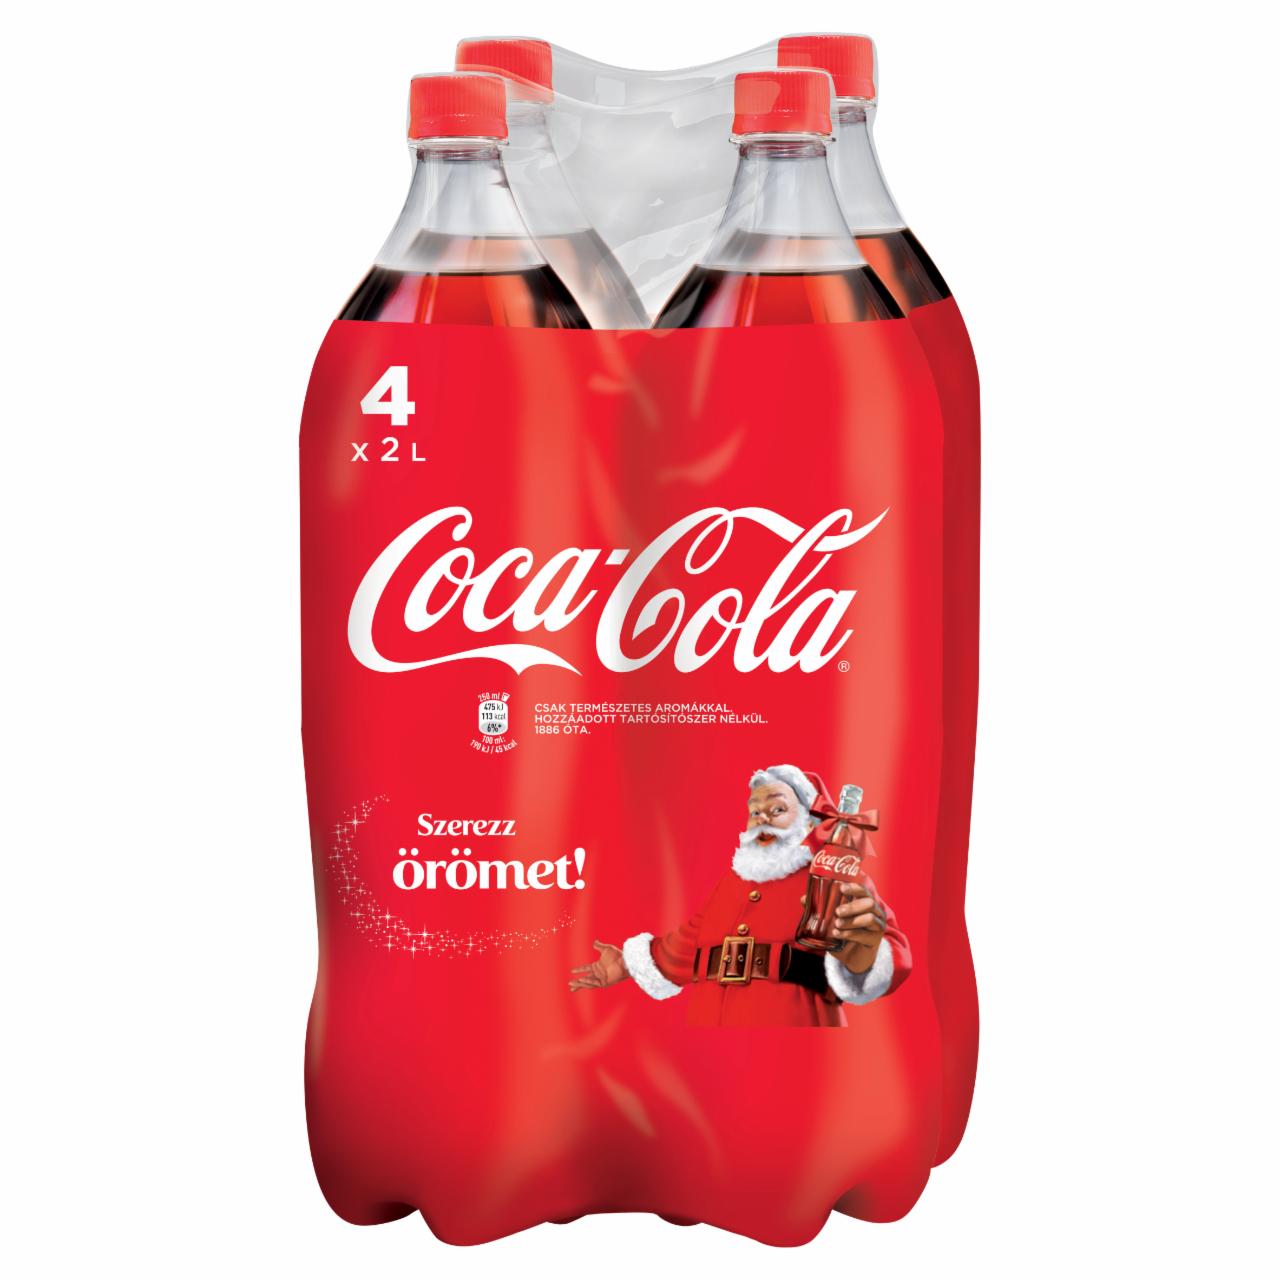 Képek - Coca-Cola colaízű szénsavas üdítőital 4 x 2 l